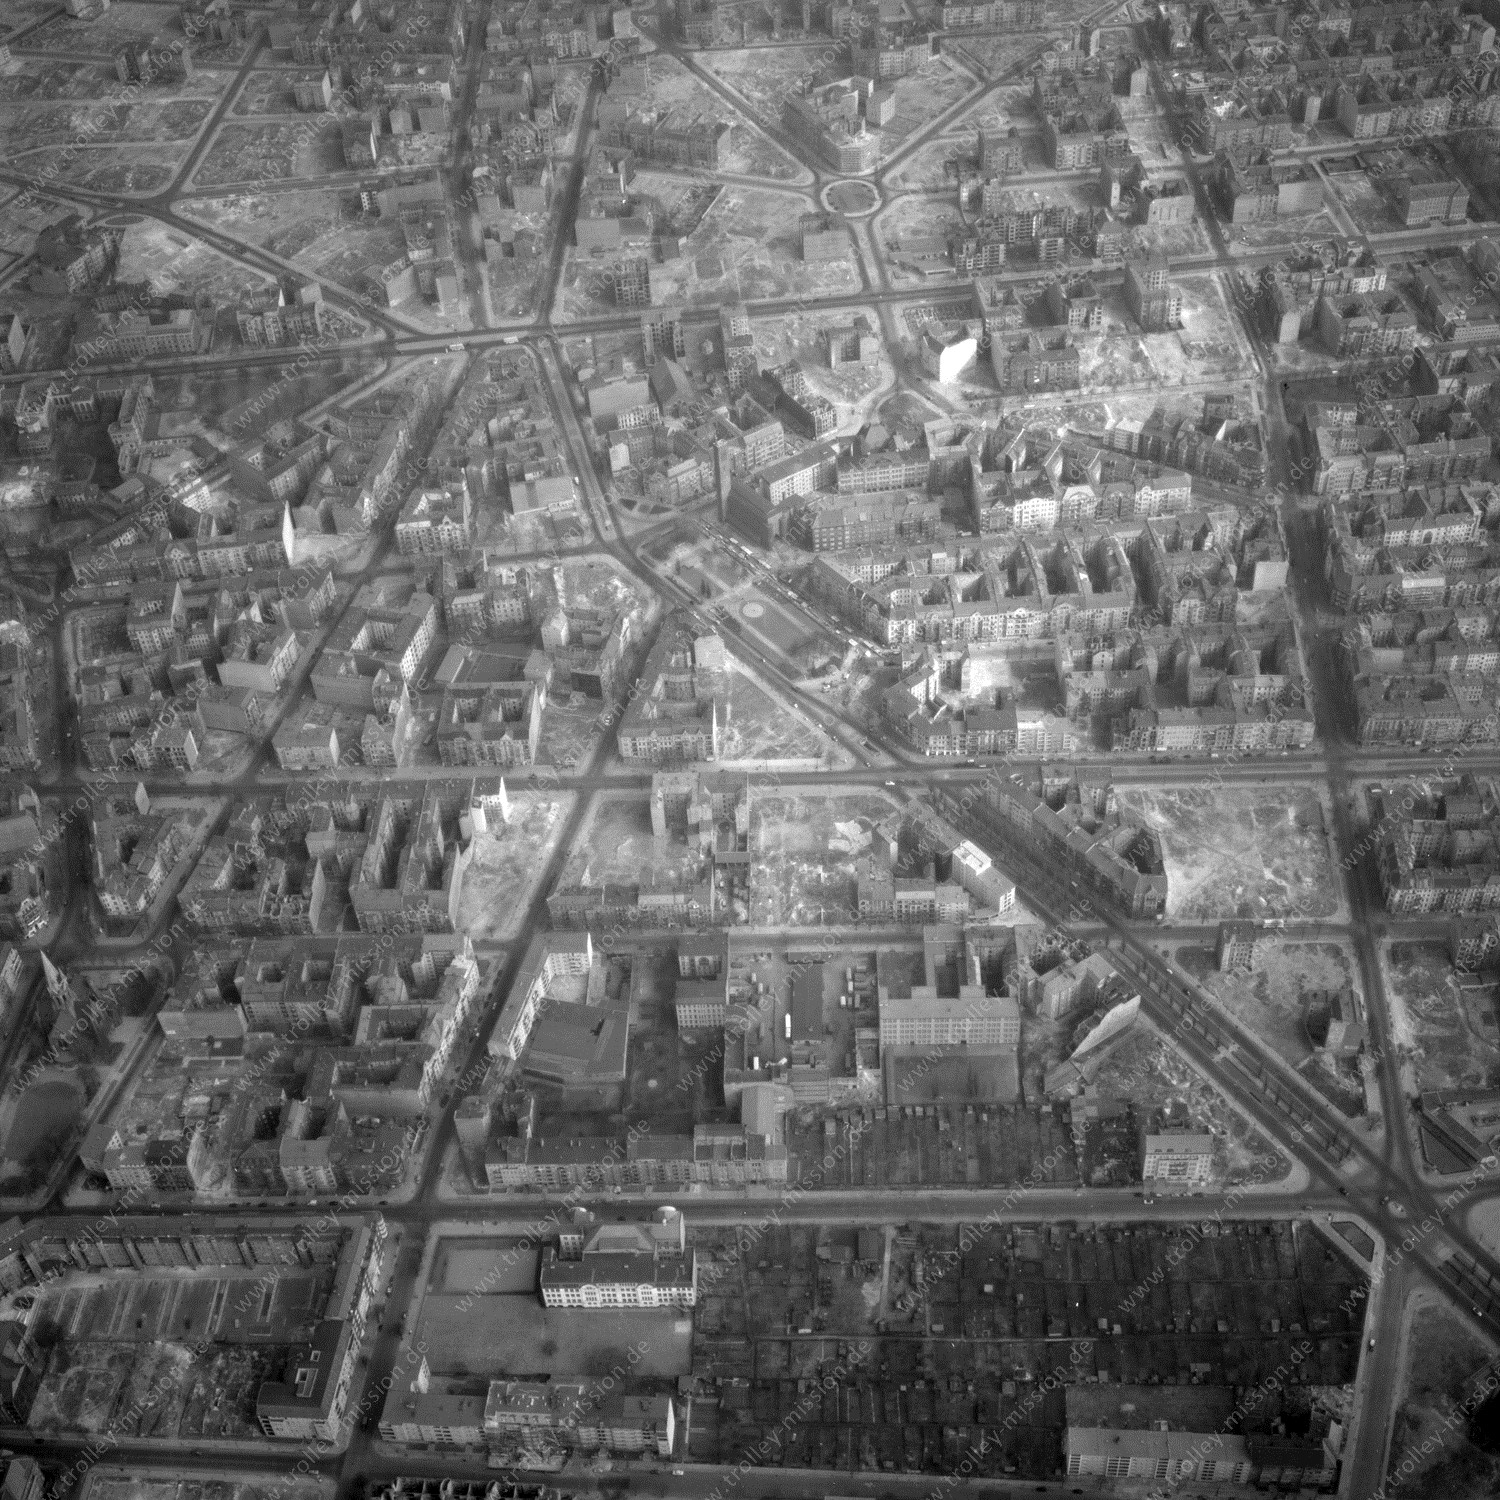 Alte Fotos und Luftbilder von Berlin - Luftbildaufnahme Nr. 07 - Historische Luftaufnahmen von West-Berlin aus dem Jahr 1954 - Flugstrecke Delta